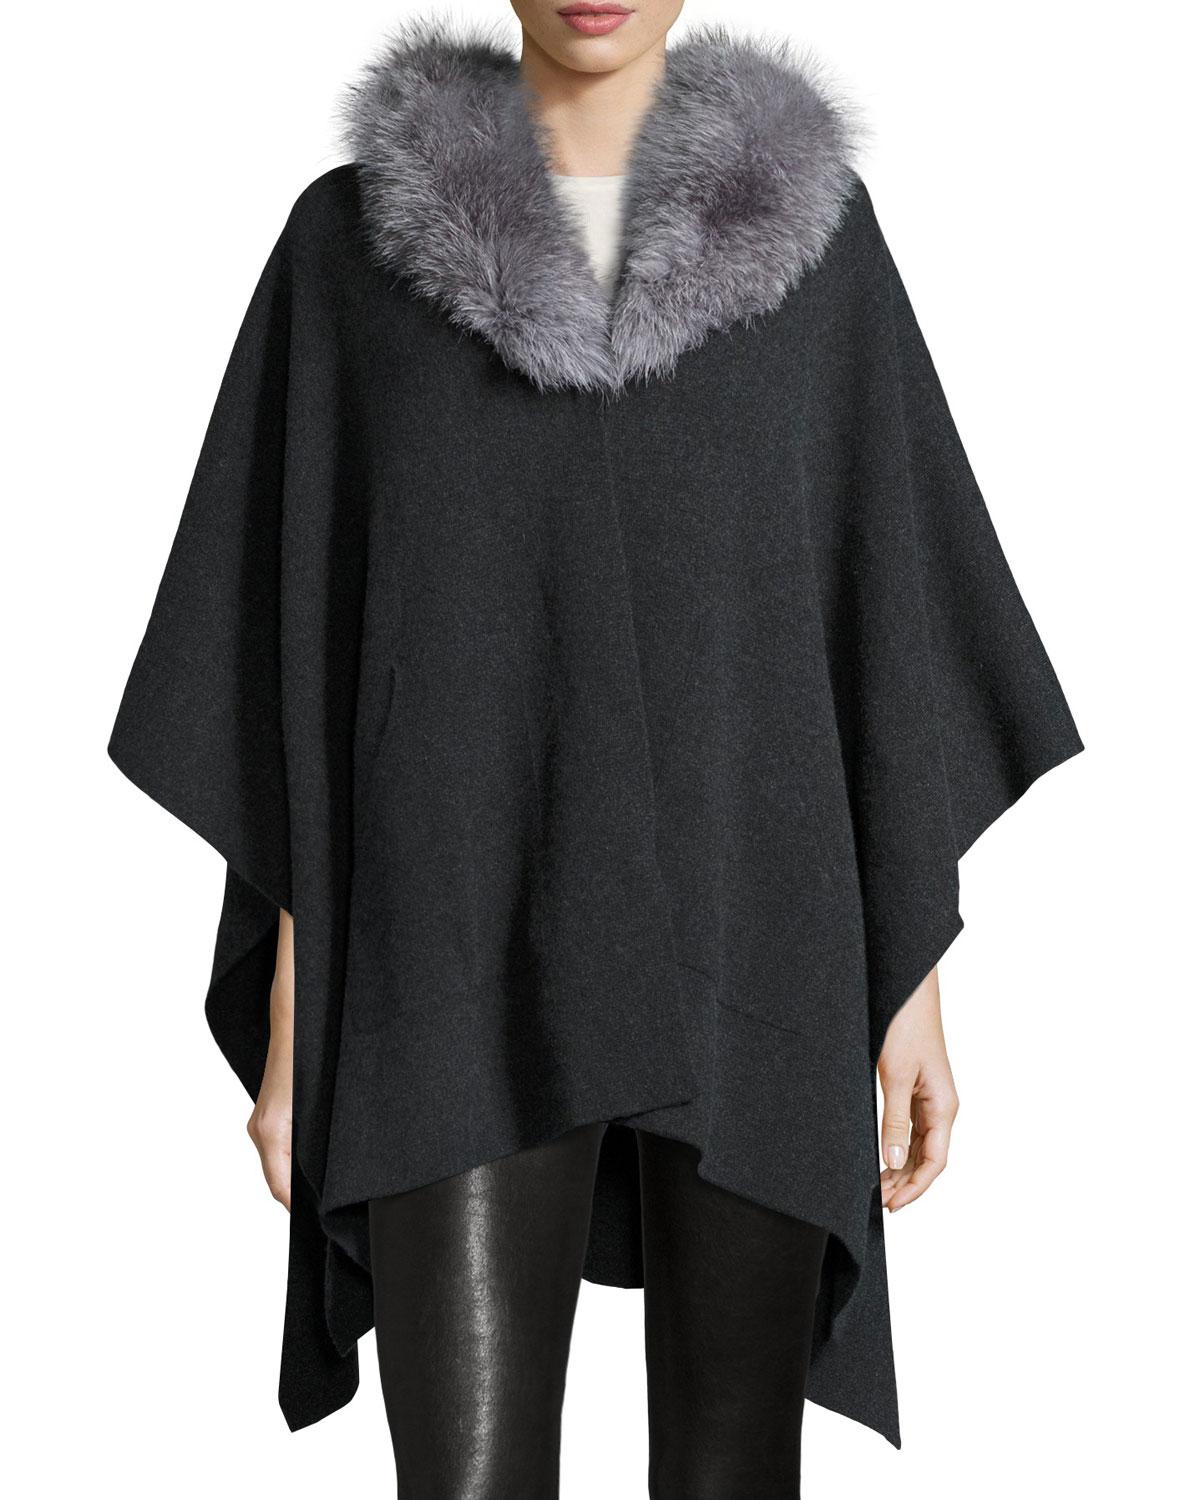 Lyst - Sofia Cashmere Cashmere Cape W/ Fox Fur Collar in Black